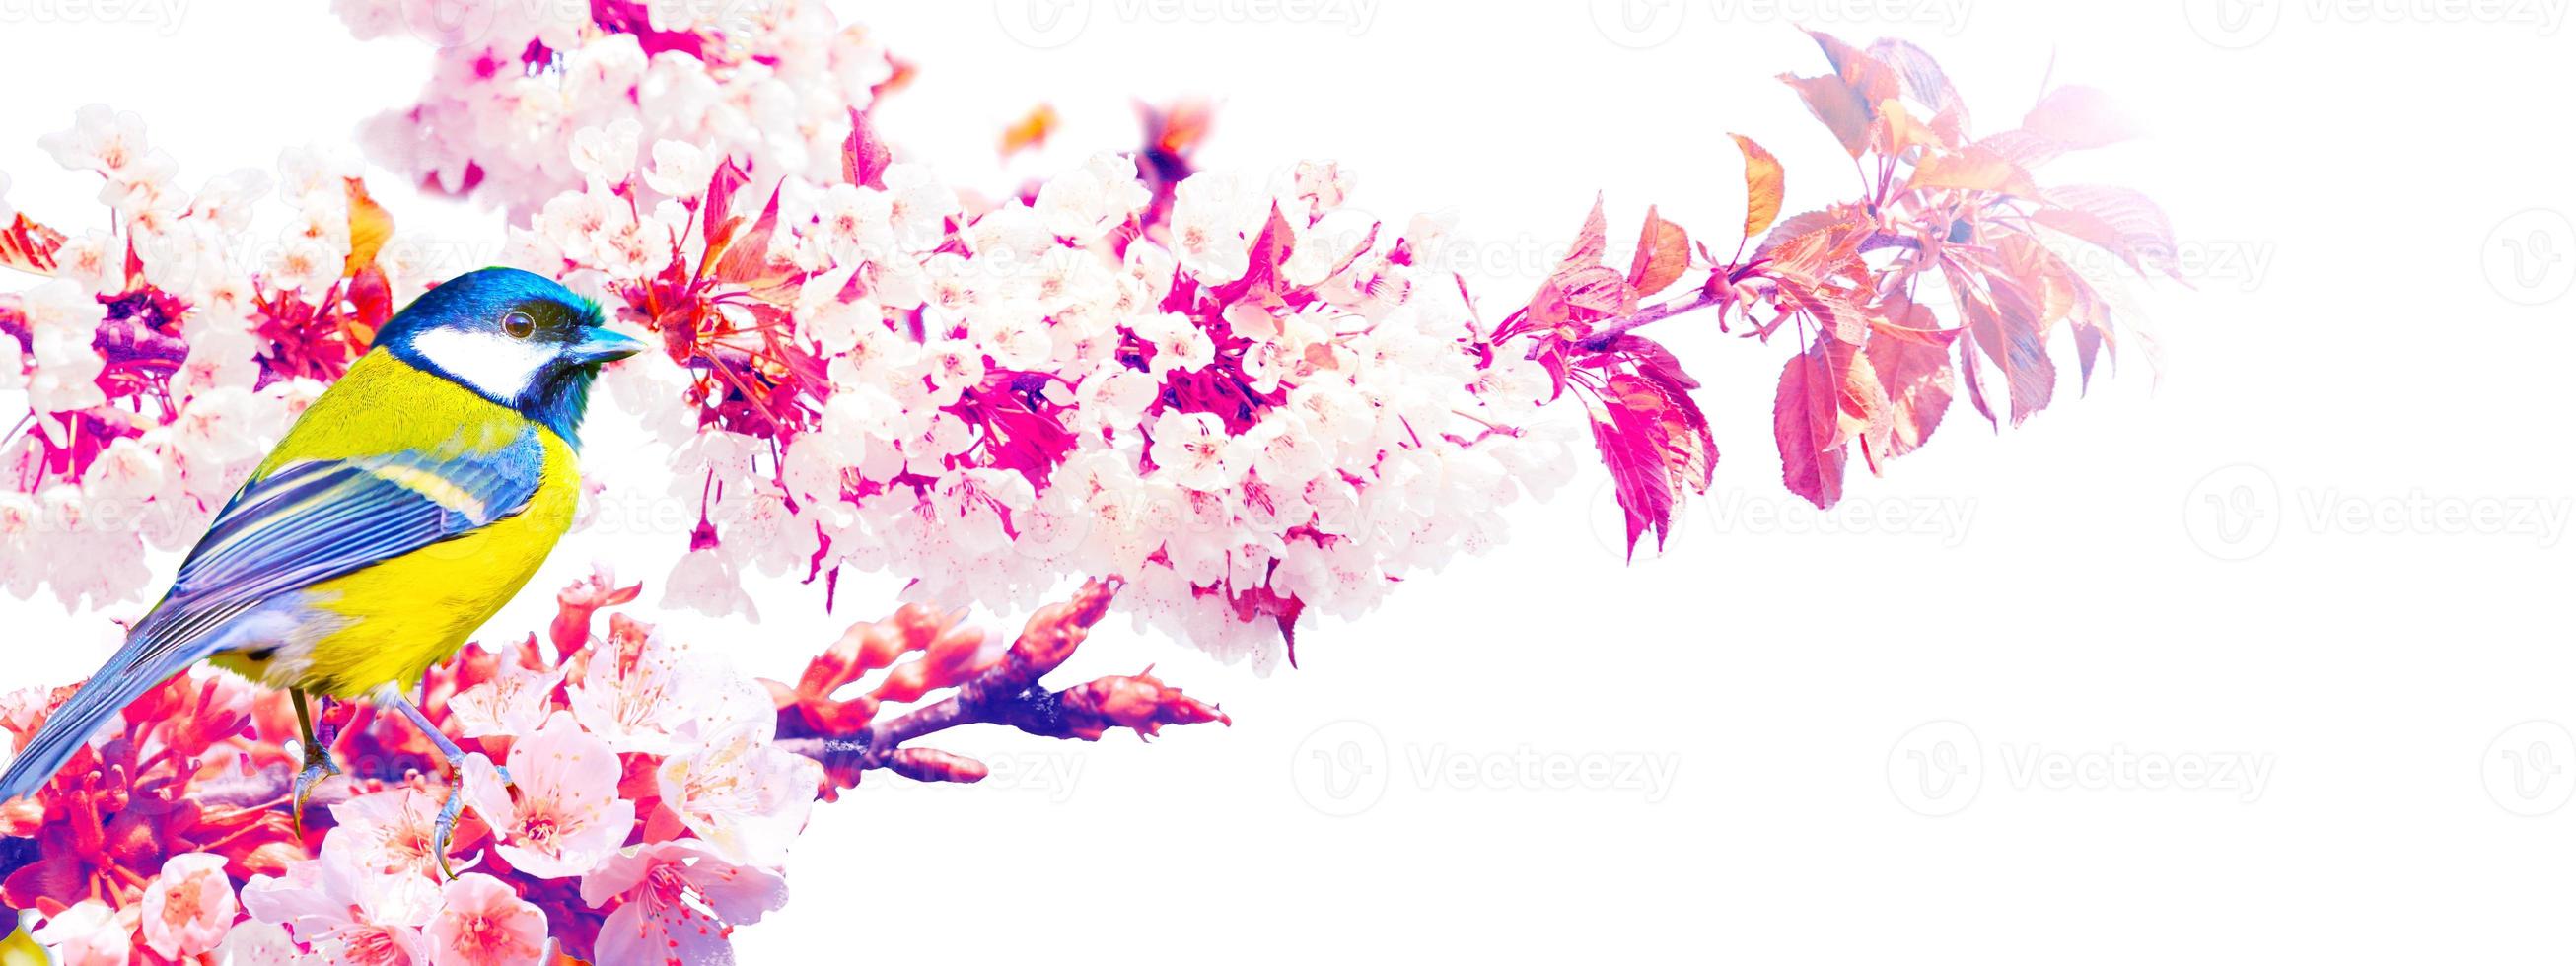 Kohlmeise sitzt bei Frühlingswetter auf einem Ast foto